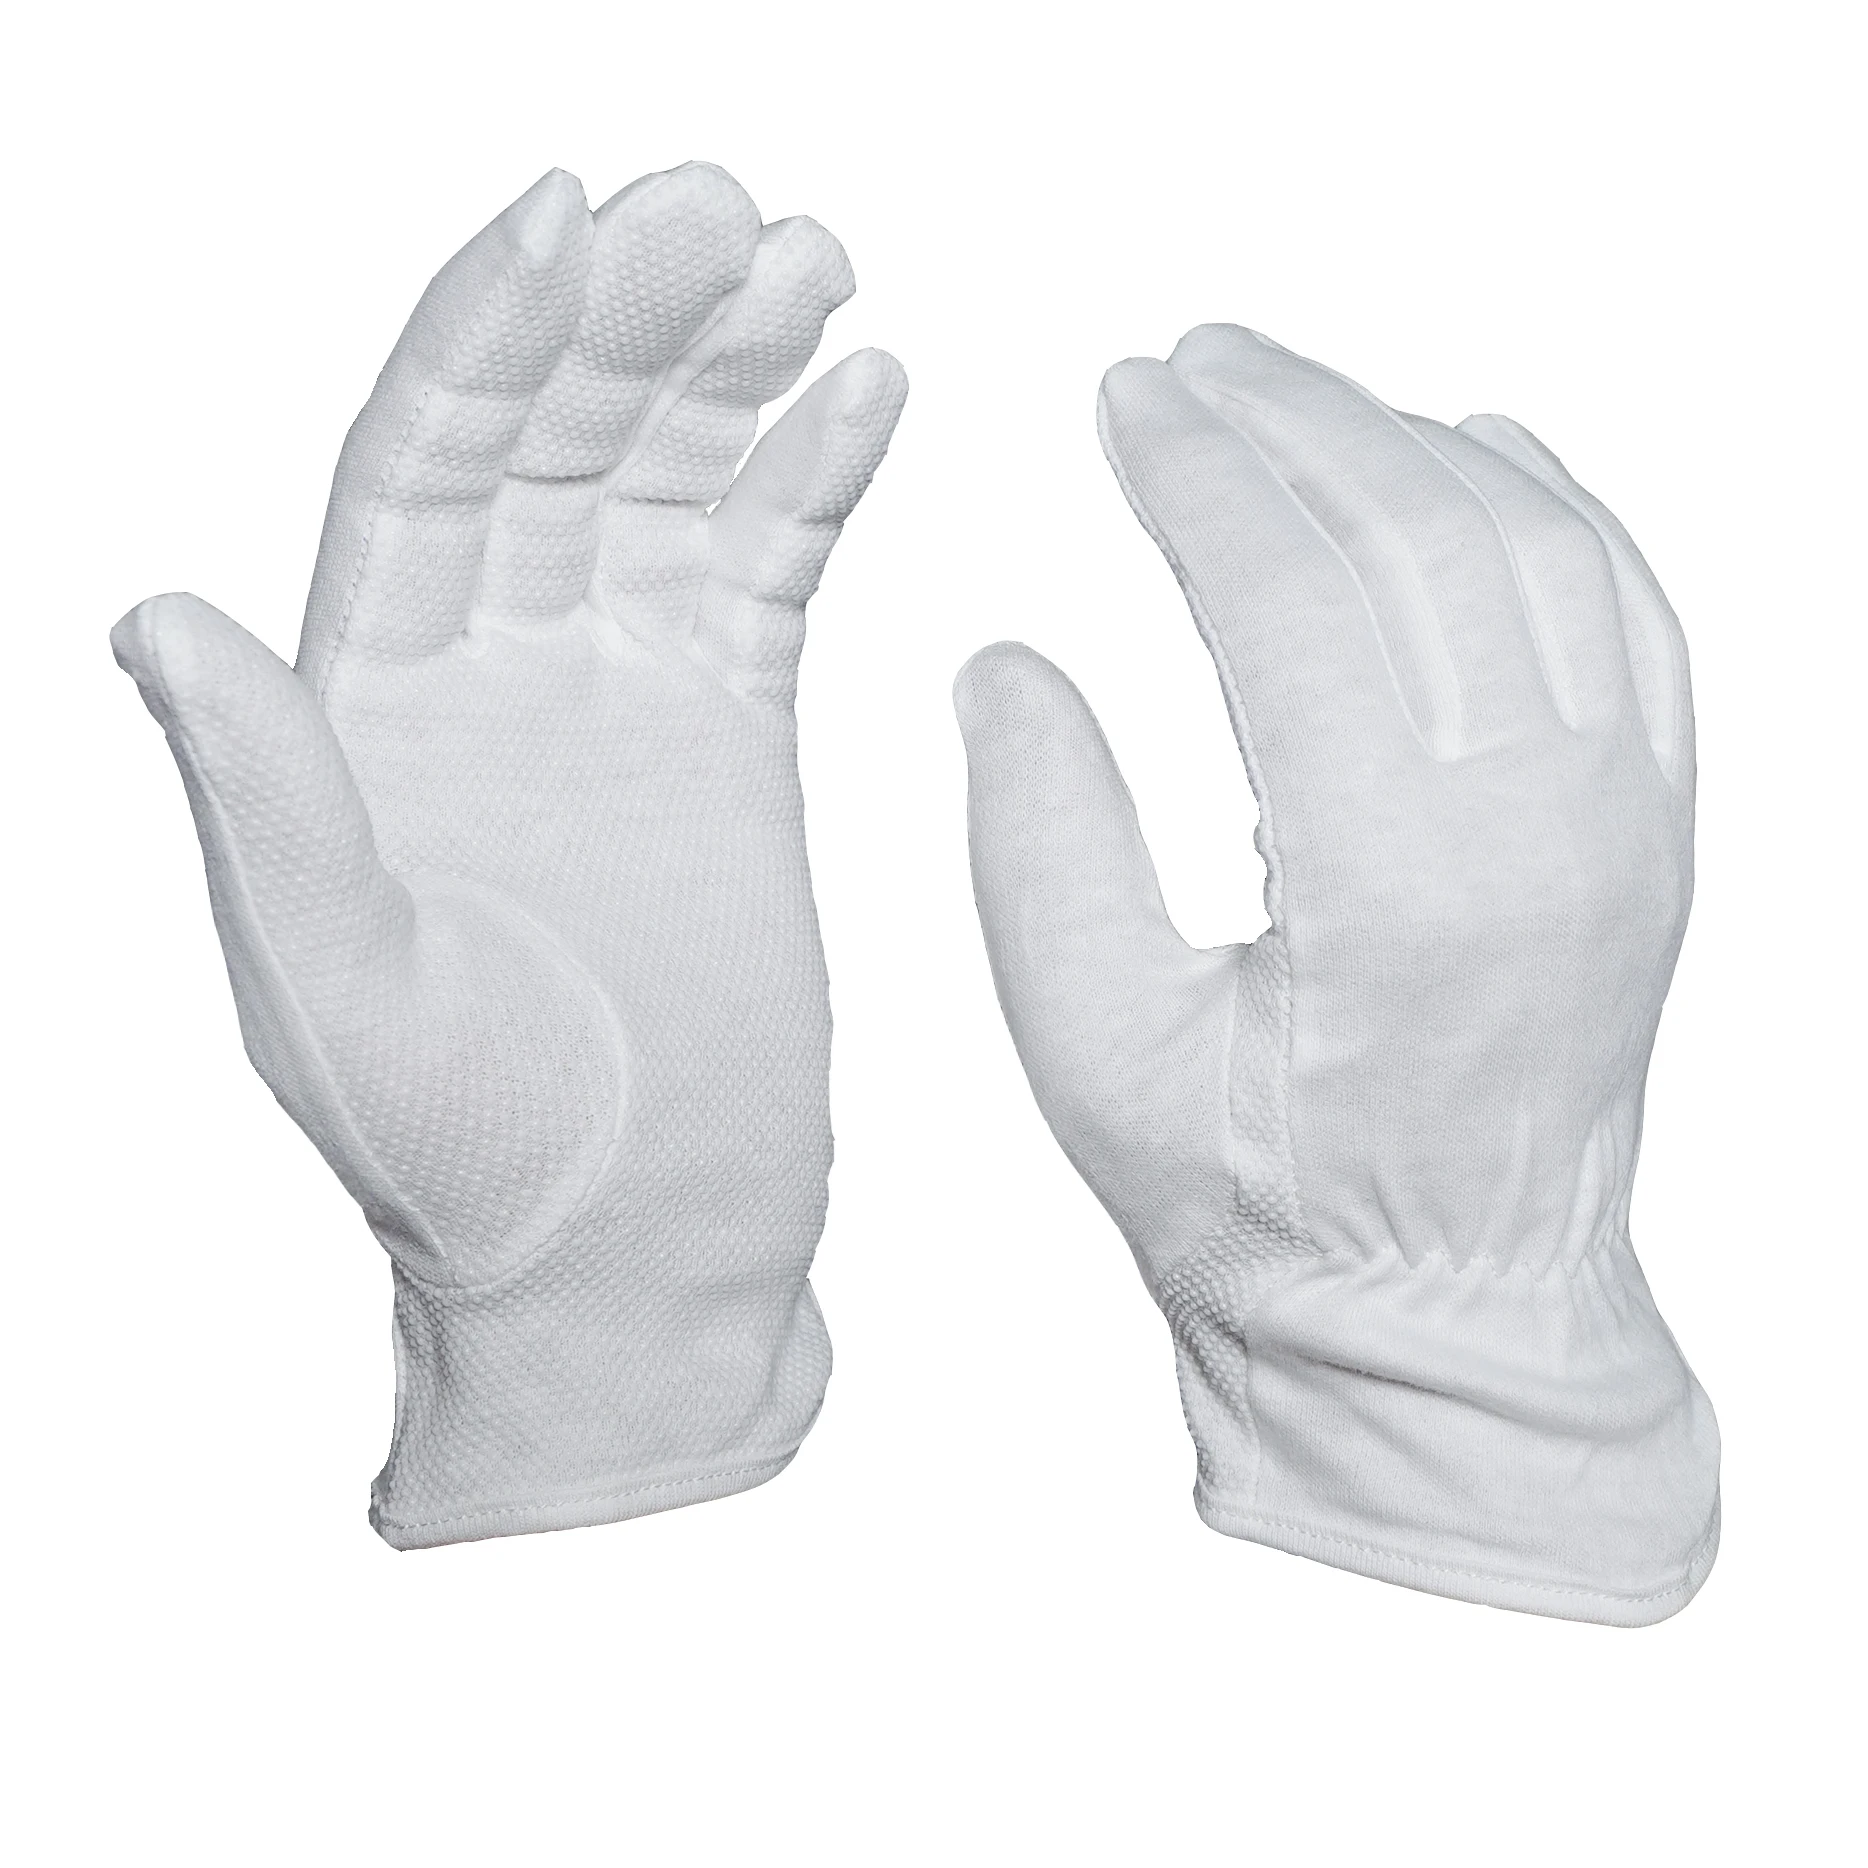 Перчатки хлопок пвх. Белые перчатки для официантов. Перчатки для парада. Перчатки из хлопка. Перчатки захват.